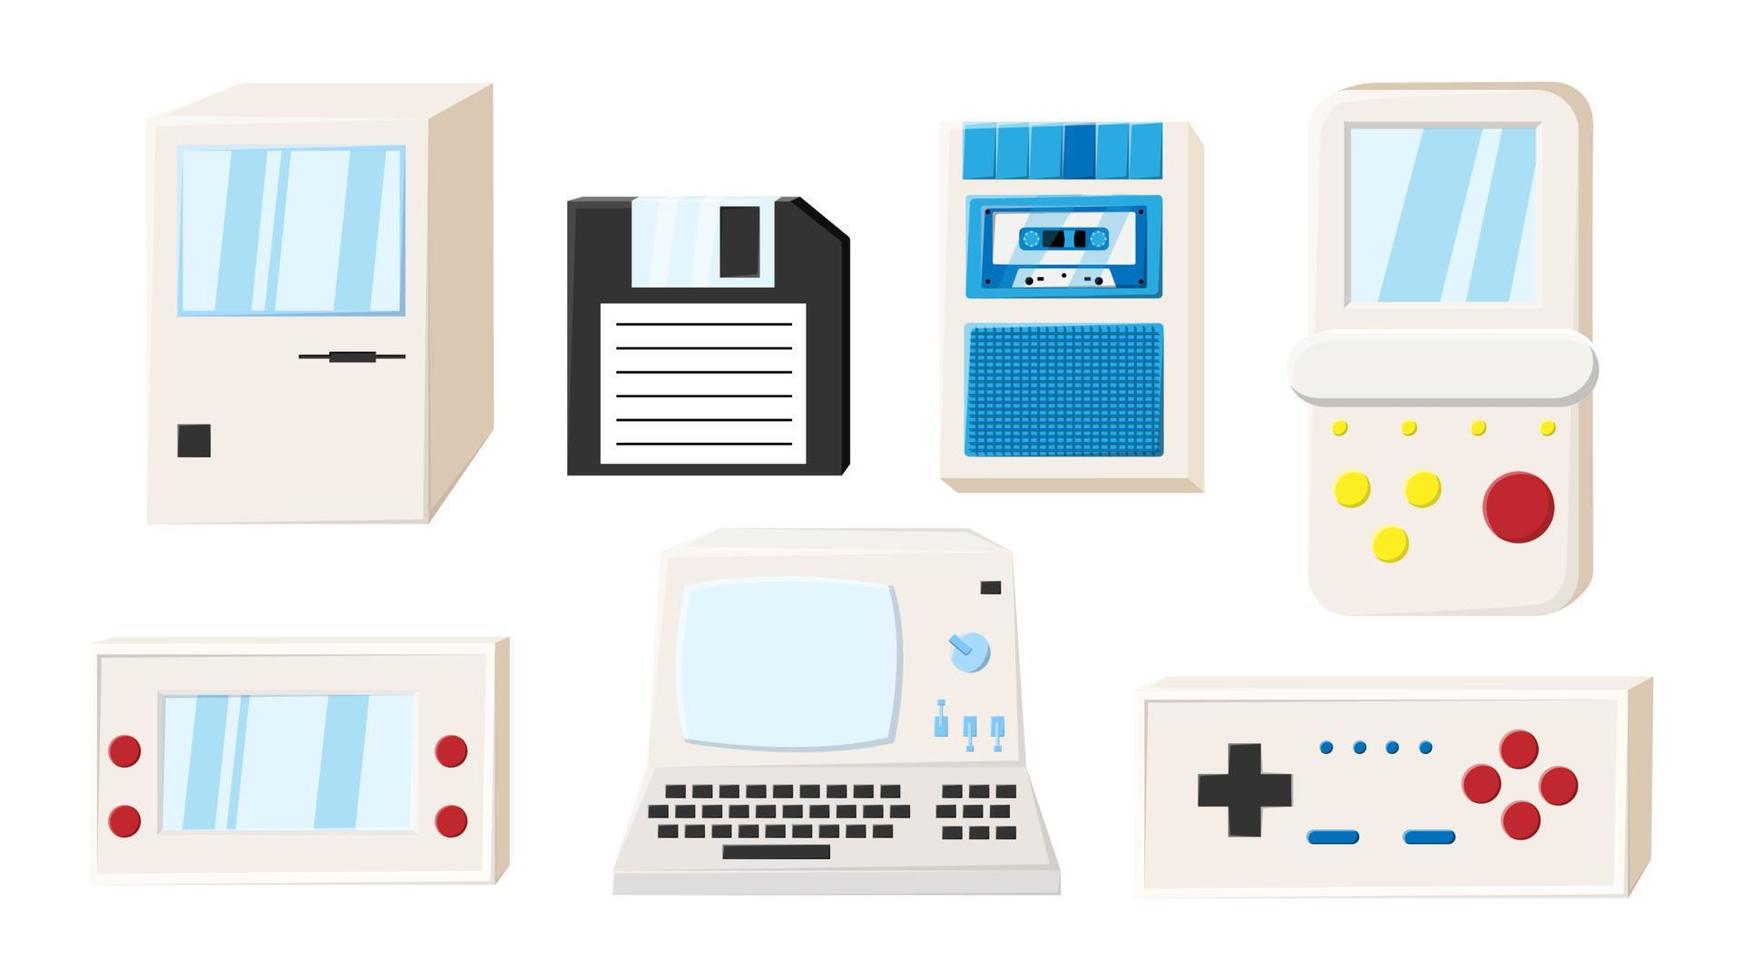 ensemble d'anciens ordinateurs électroniques de technologie d'isométrie vintage rétro, pc, disquette disquette, consoles de jeux vidéo portables de jeu des années 70, 80, 90. illustration vectorielle vecteur